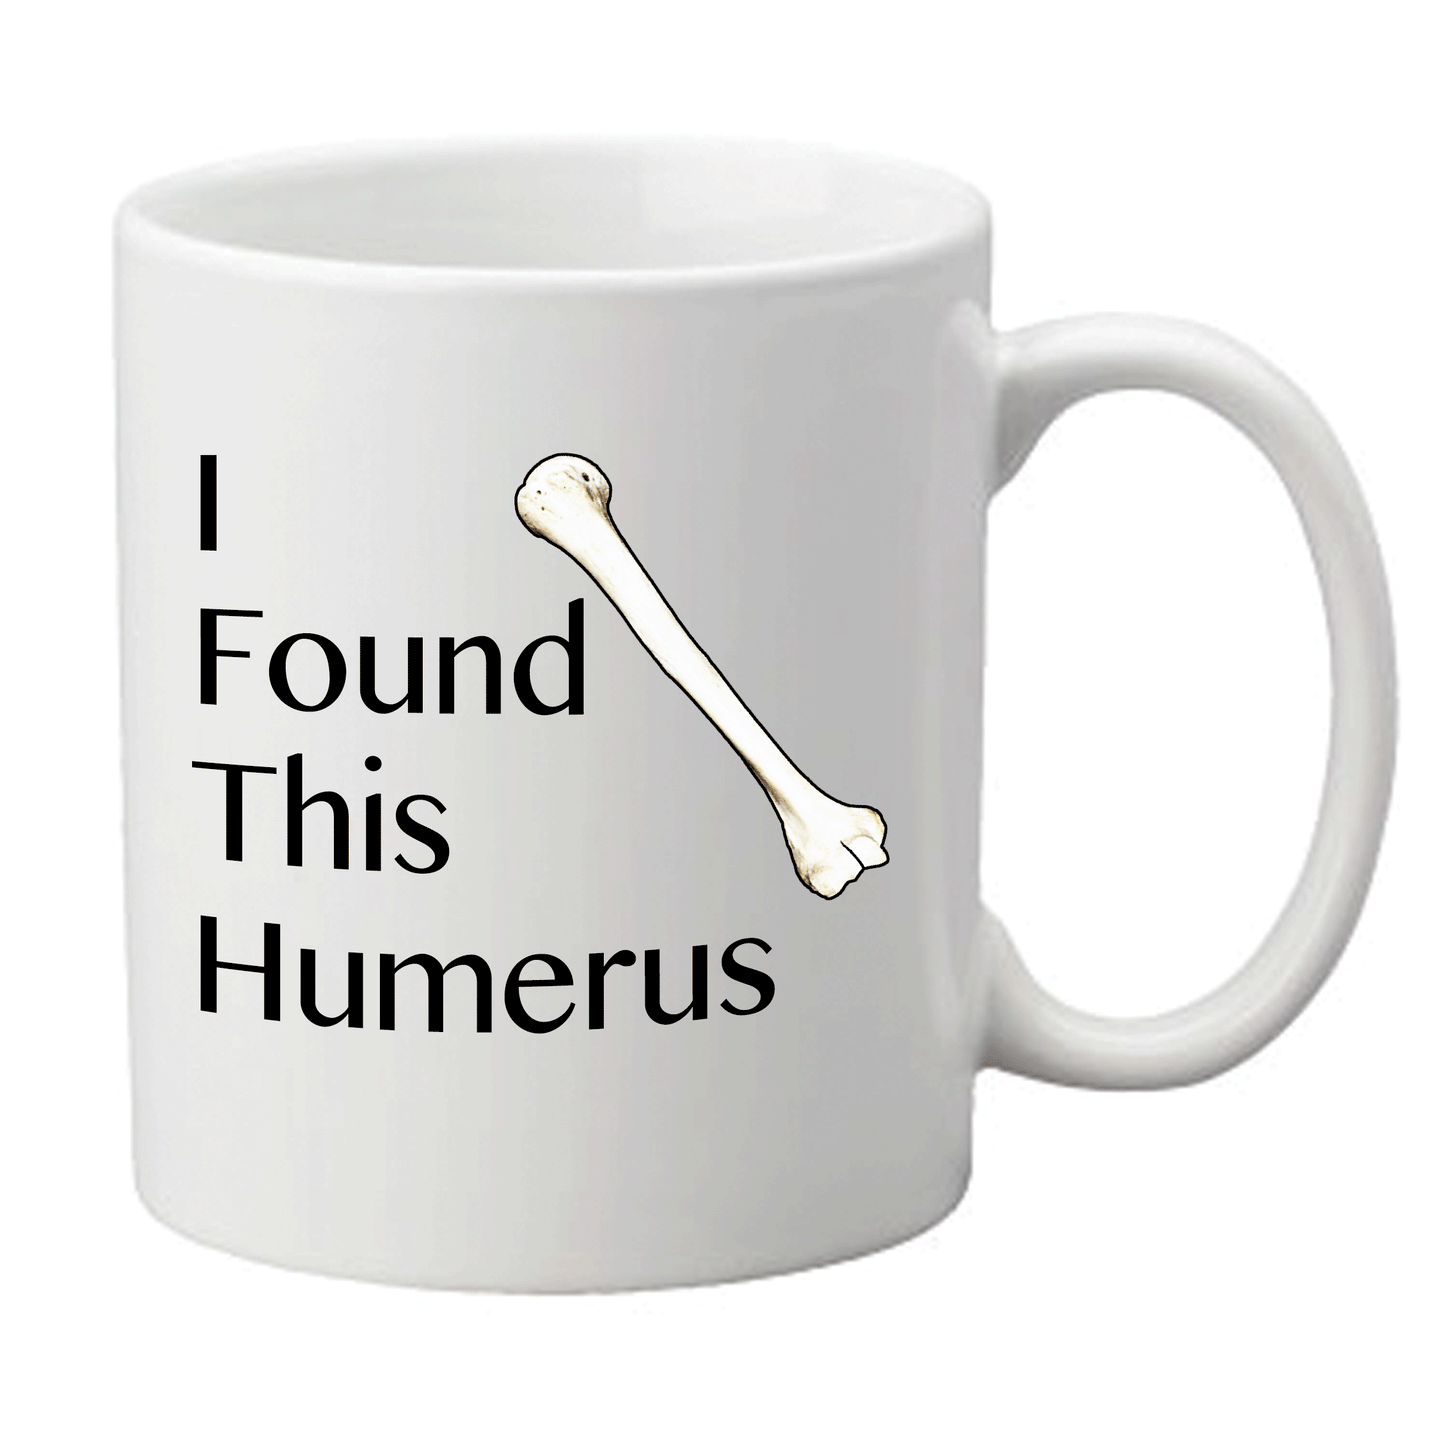 'I Found This Humerus' Mug